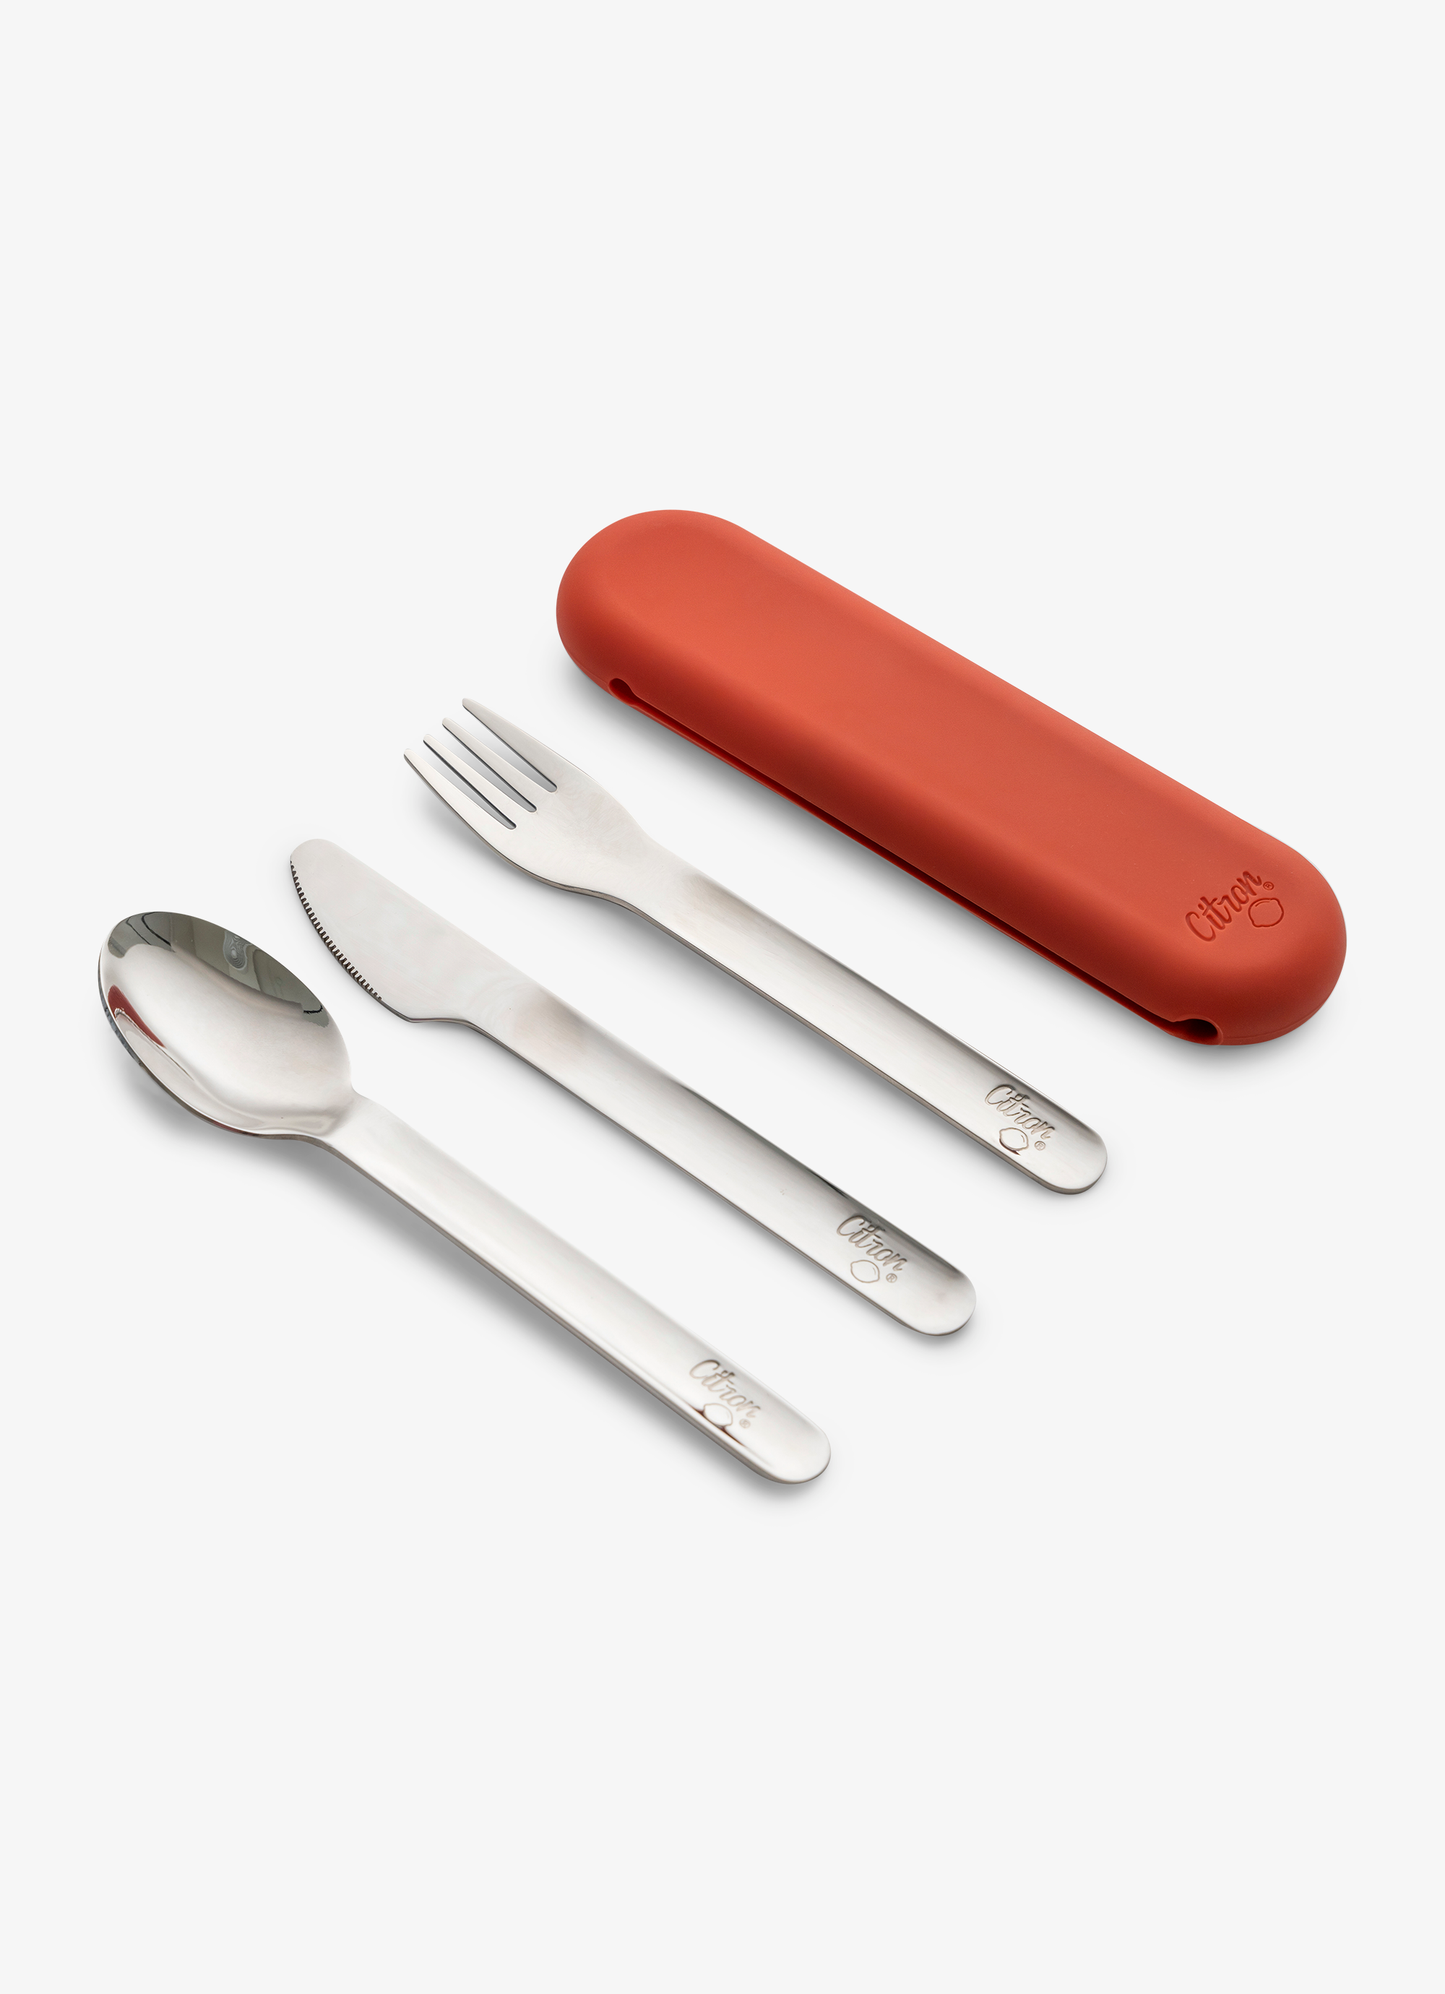 مجموعة أدوات المائدة من الفولاذ المقاوم للصدا - طوبي+ حقيبة